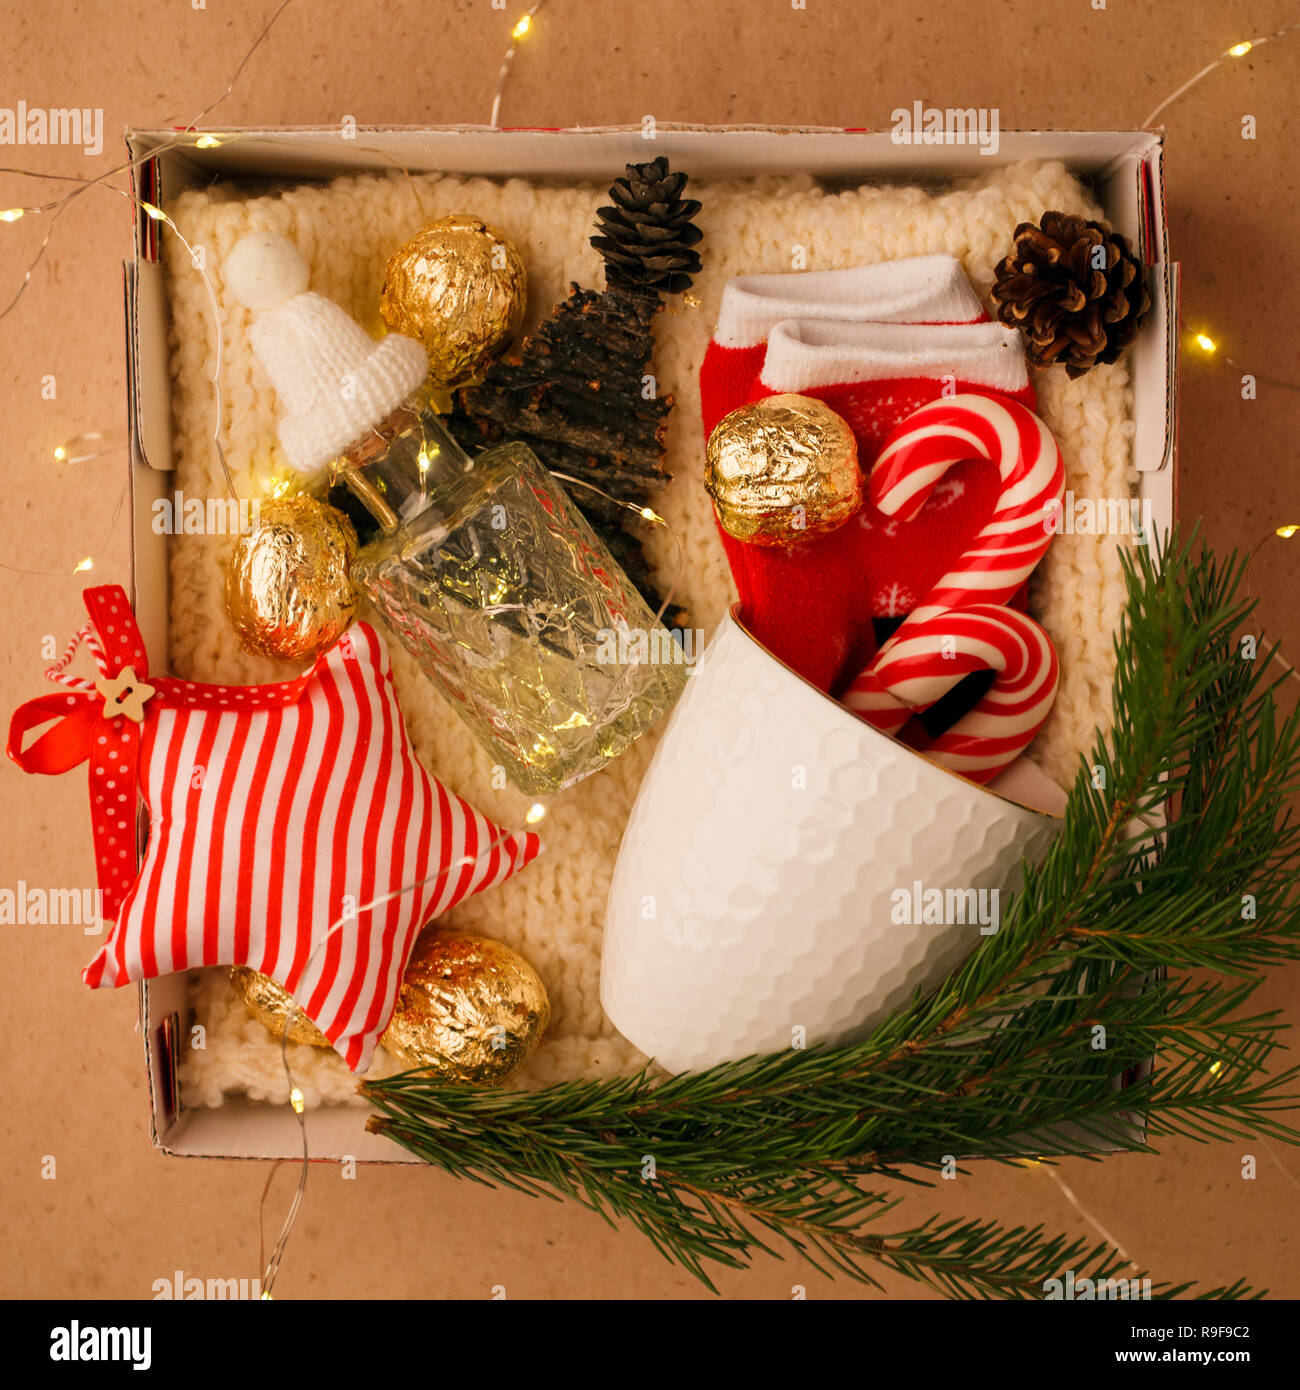 Eine persönliche Box mit Geschenke für Weihnachten und das neue Jahr, eine Reihe von süßen Sachen, traditionelle Spezialitäten und Dekor, eine einfache Idee für ein schönes Geschenk für Familie Stockfoto